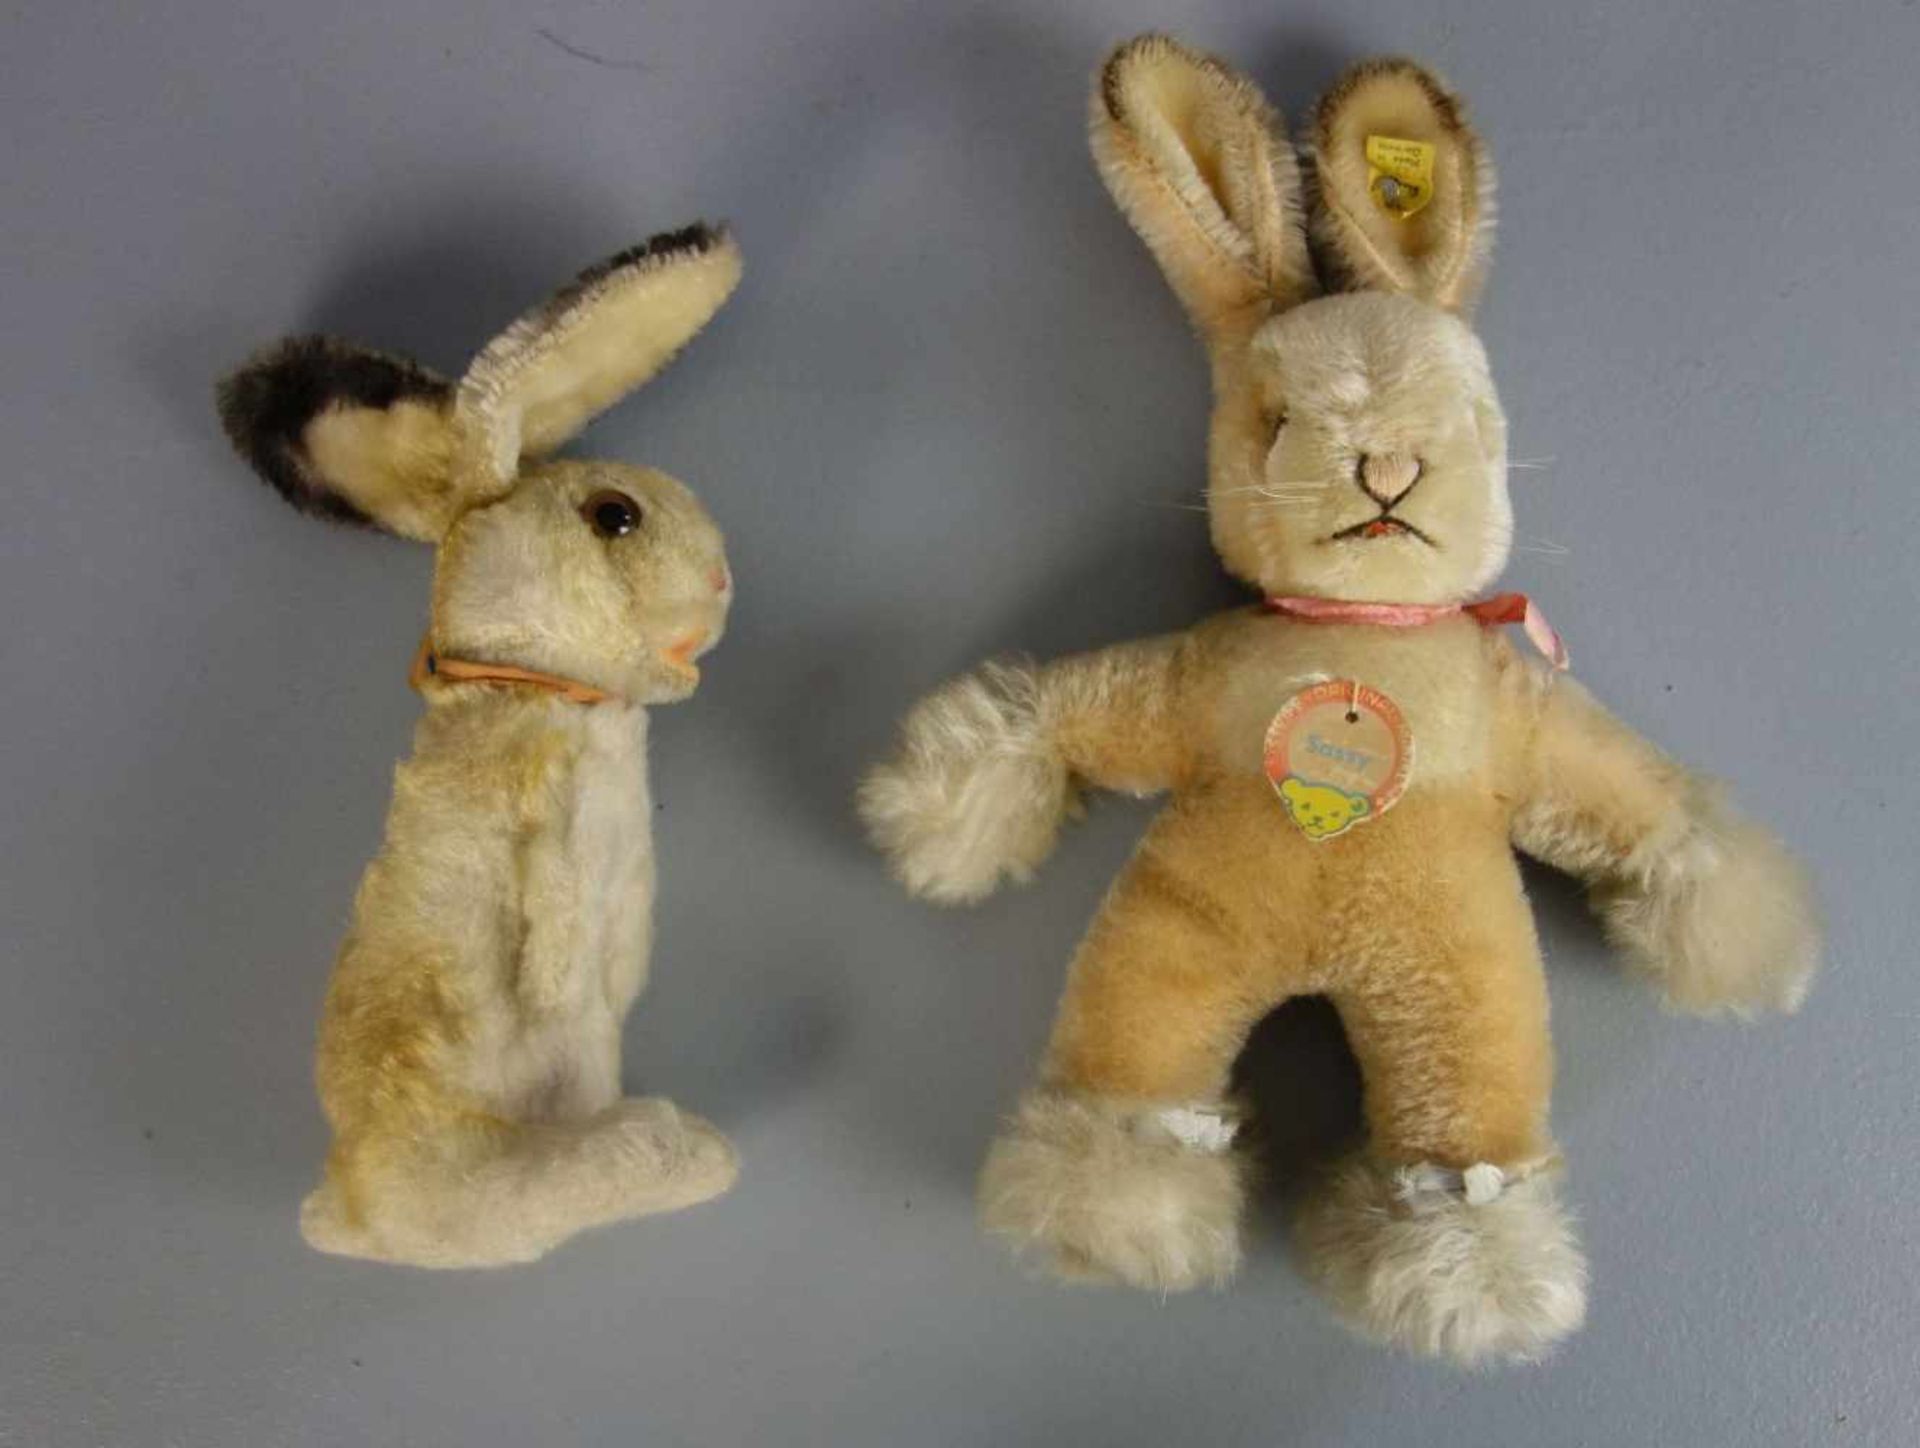 PLÜSCHTIERE / PLÜSCHFIGUREN: 2 Steiff Hasen / two fluffy toy rabbits, 20. Jh., Manufaktur Steiff, - Bild 2 aus 4